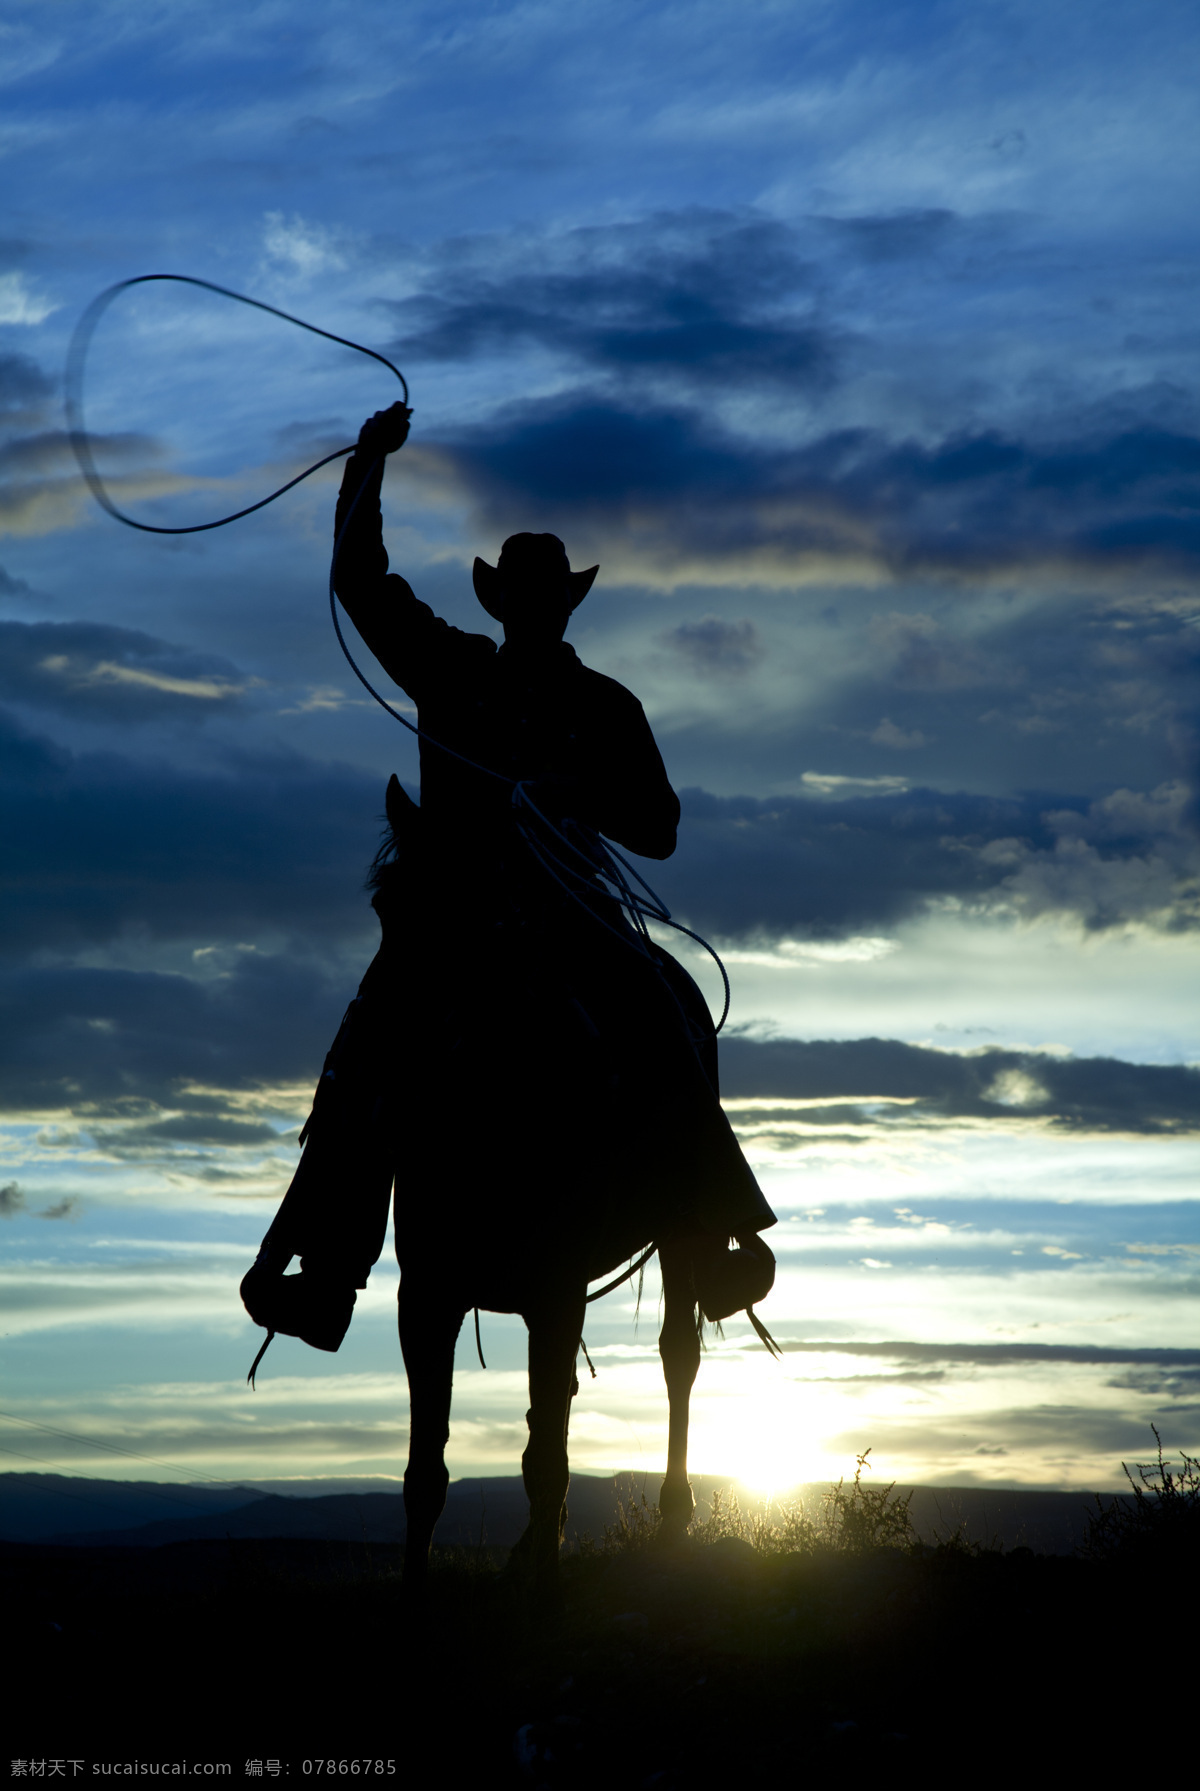 西部 牛仔 剪影 西部牛仔 骑马 鞭子 人物剪影 生活人物 人物图片